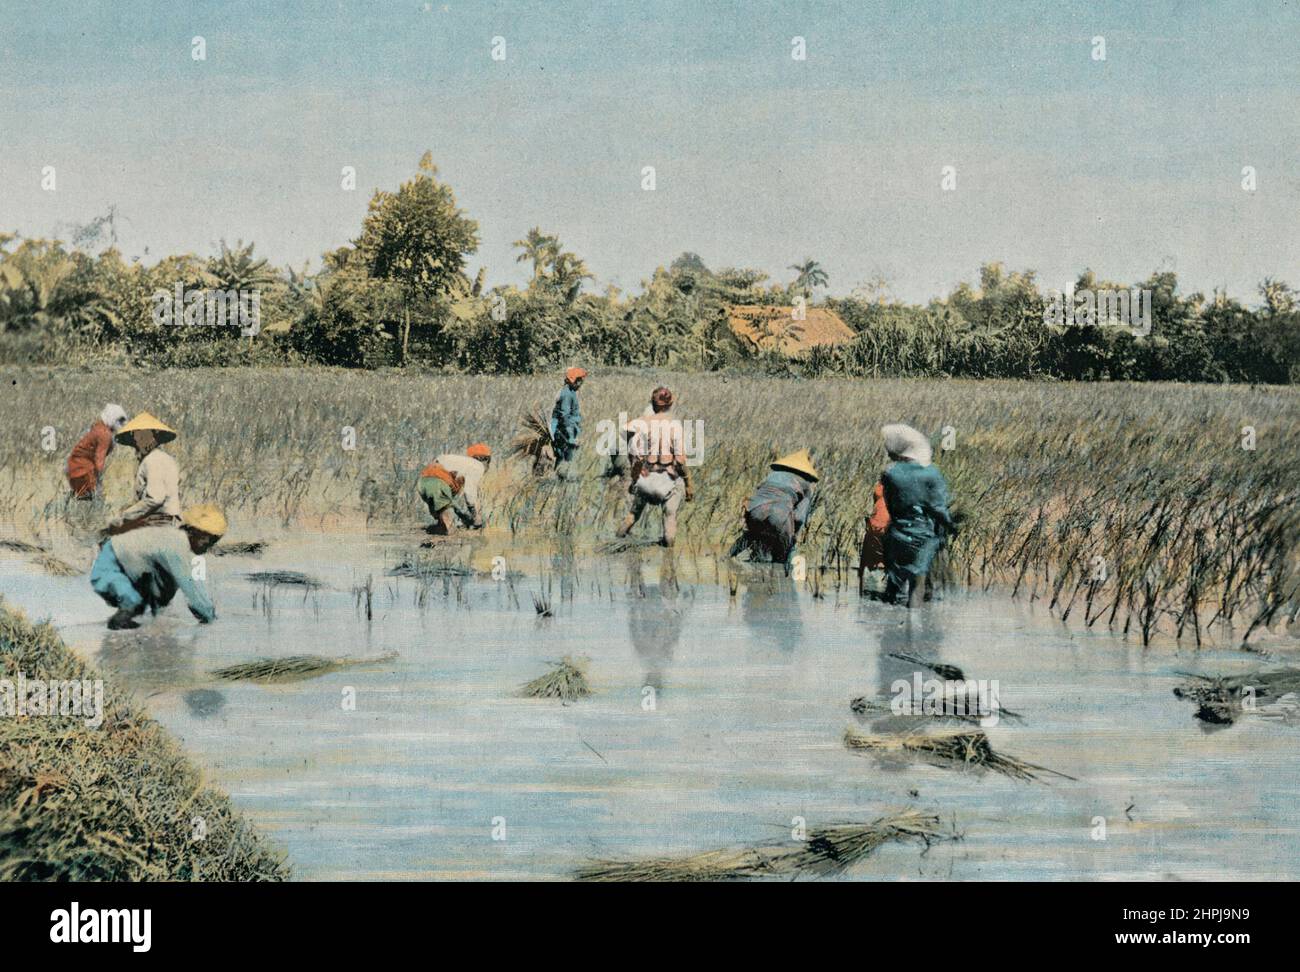 RÉCOLTE DU RIZ. Autour Du Monde Tonkin  - Vietnam II 1895 - 1900  (4)  - 19 th century french colored photography print Stock Photo